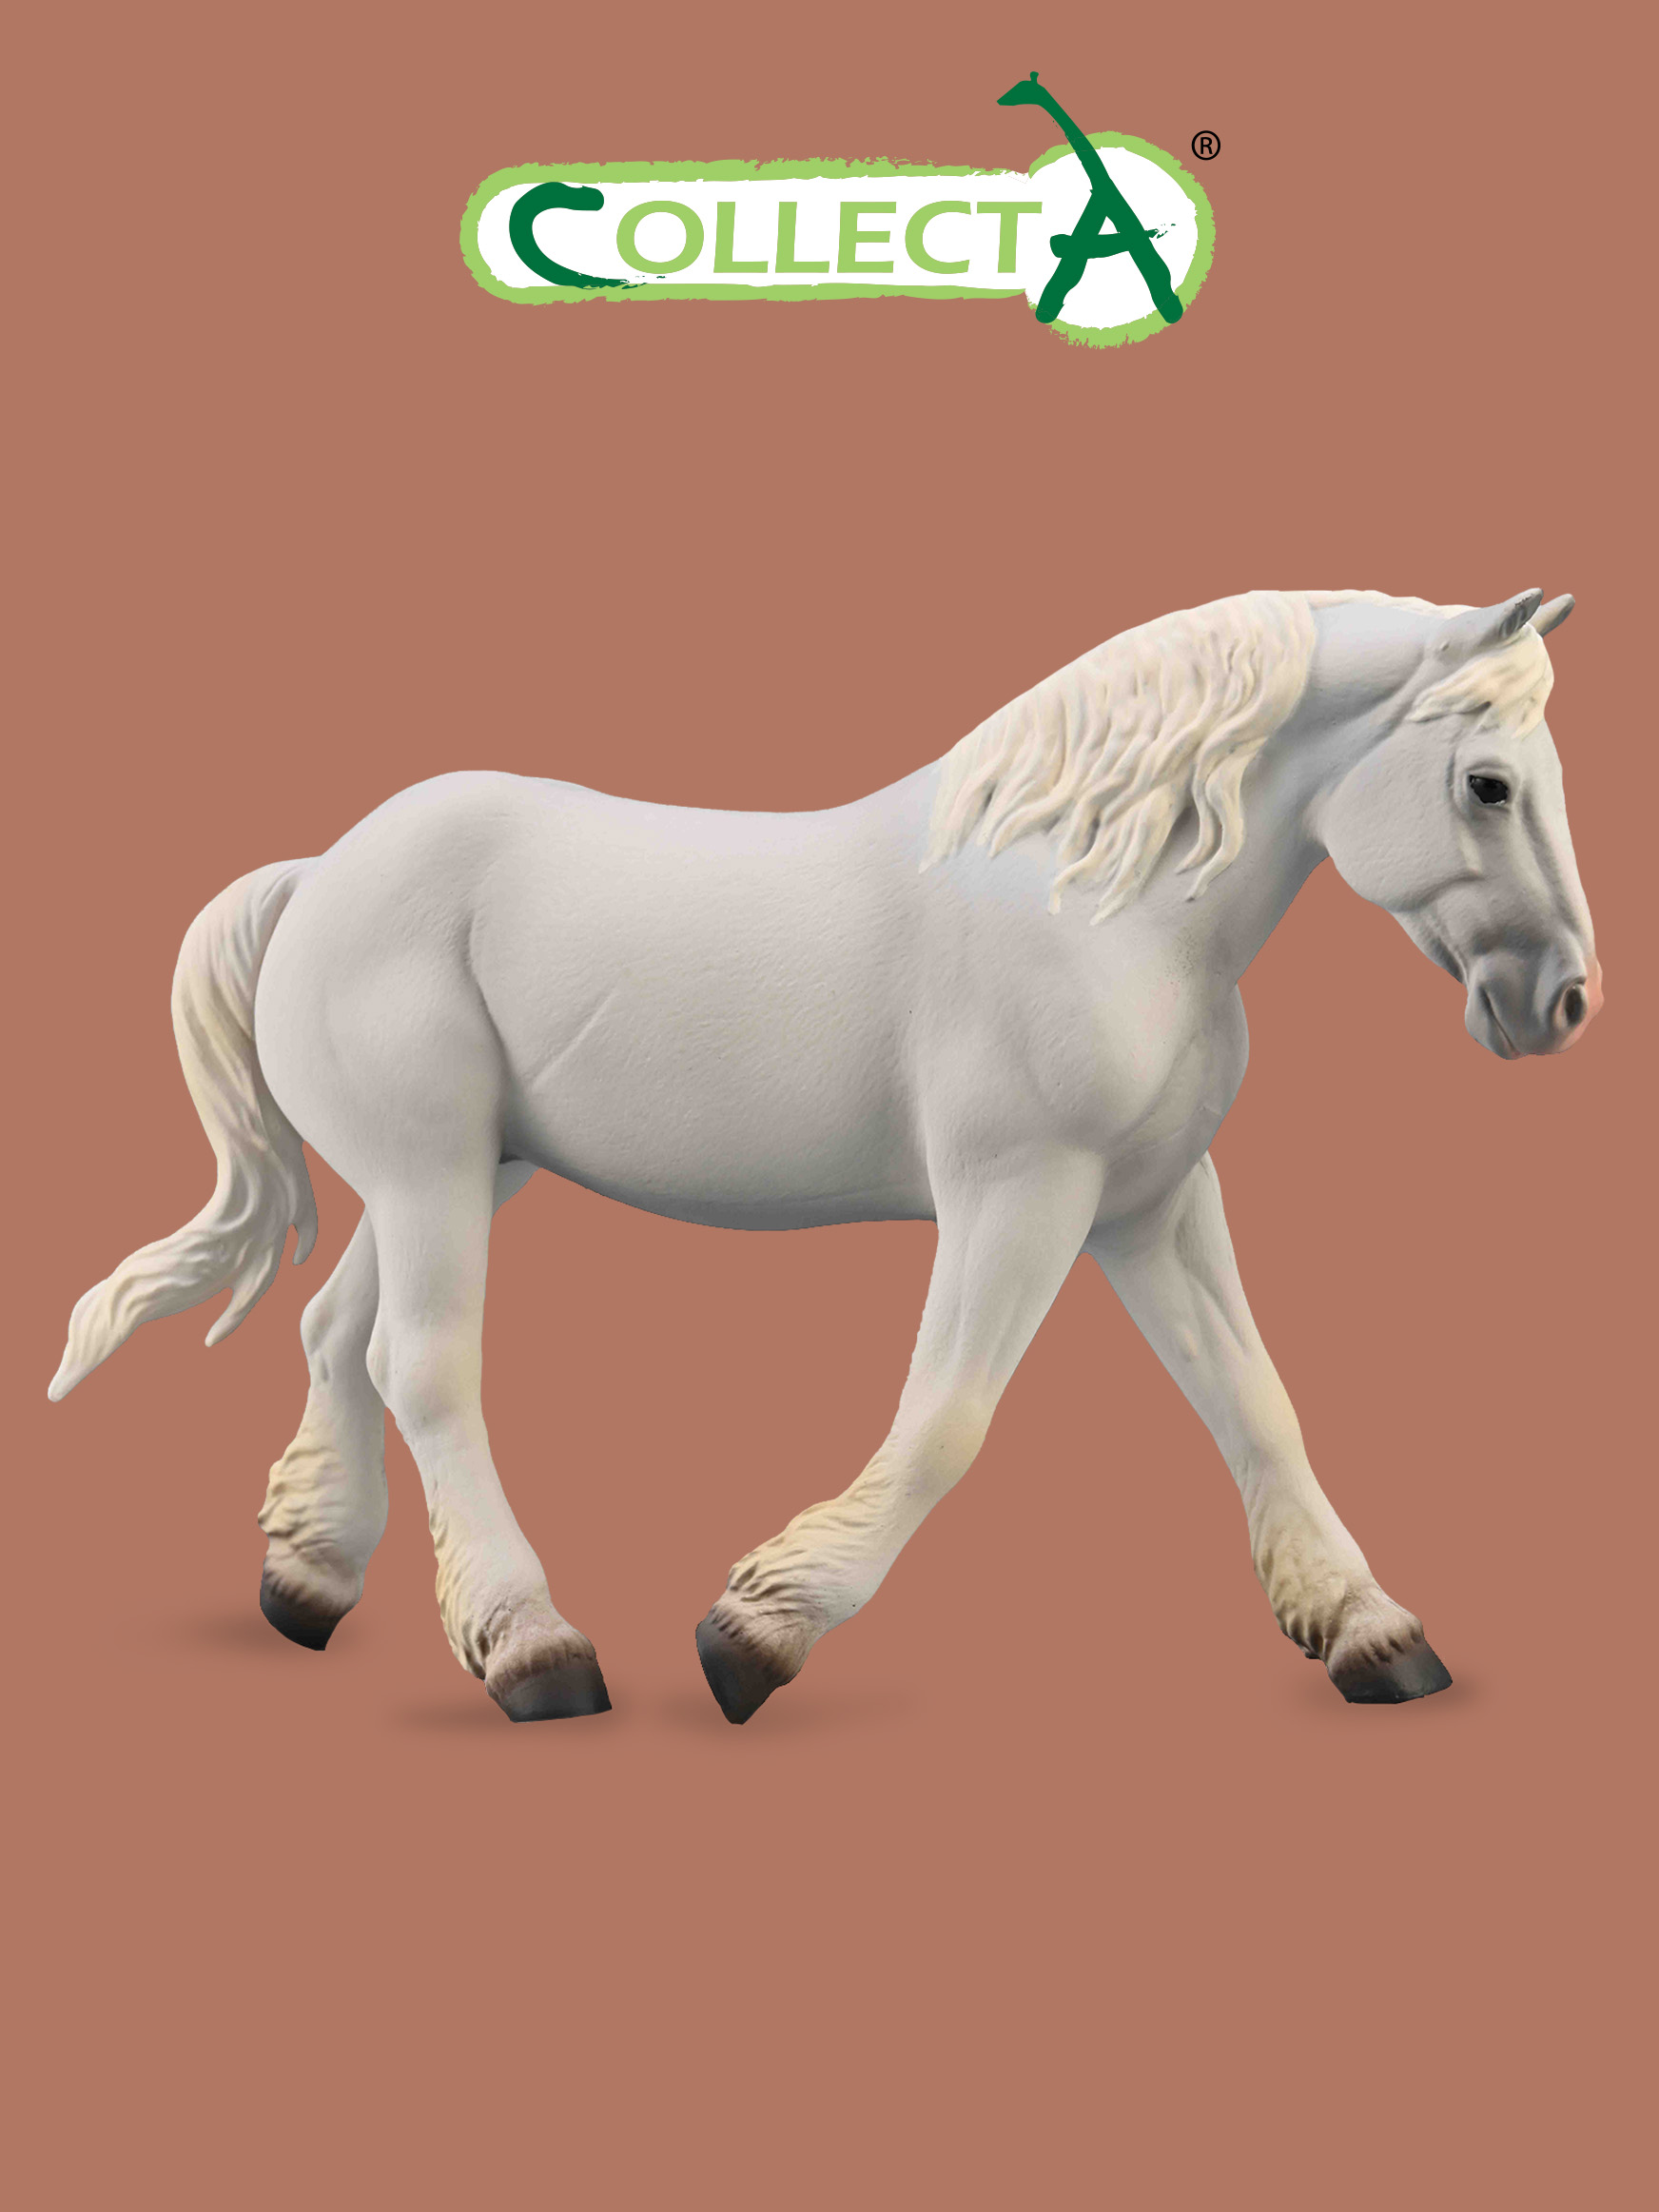 Фигурка Collecta животного Лошадь Булонская кобыла - серая